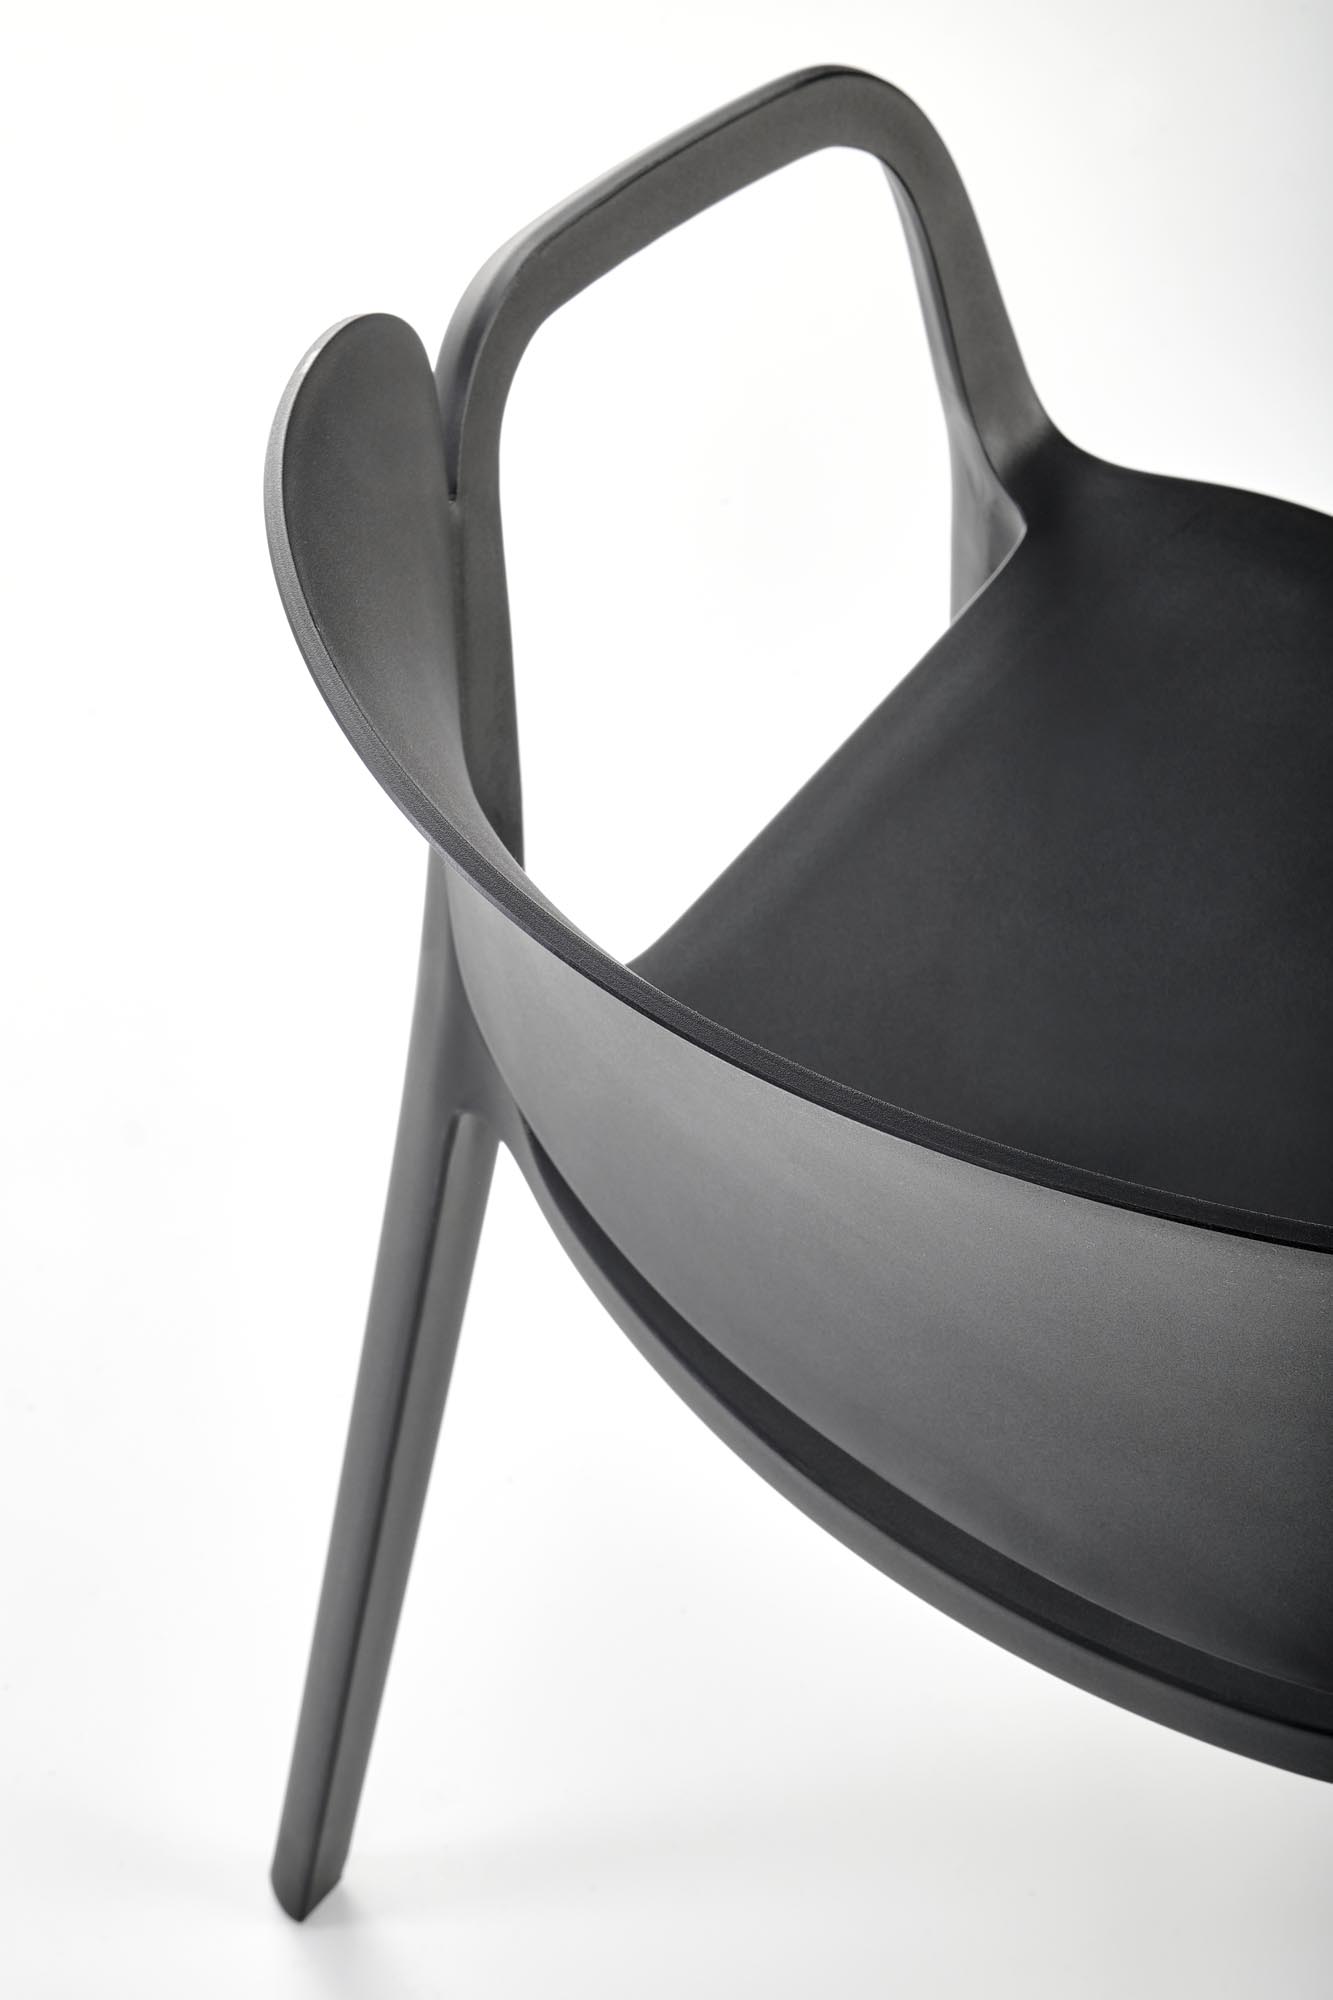 Krzesło z tworzywa sztucznego K491 - czarny krzesło z tworzywa sztucznego k491 - czarny